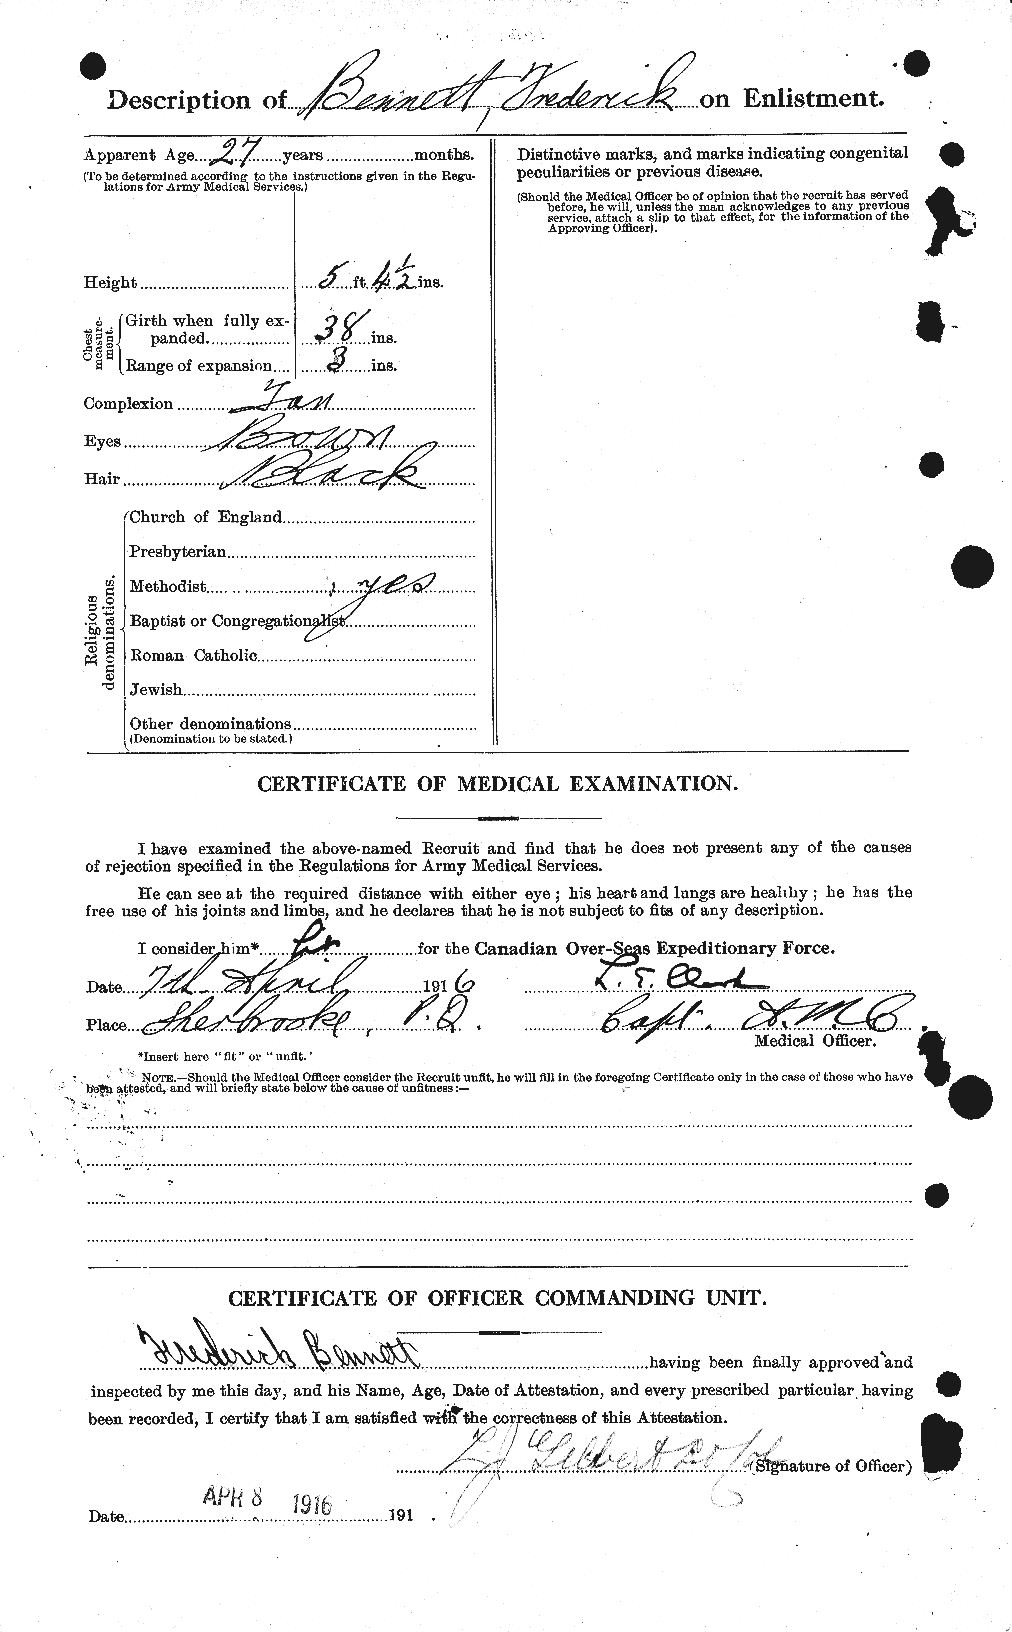 Dossiers du Personnel de la Première Guerre mondiale - CEC 233521b